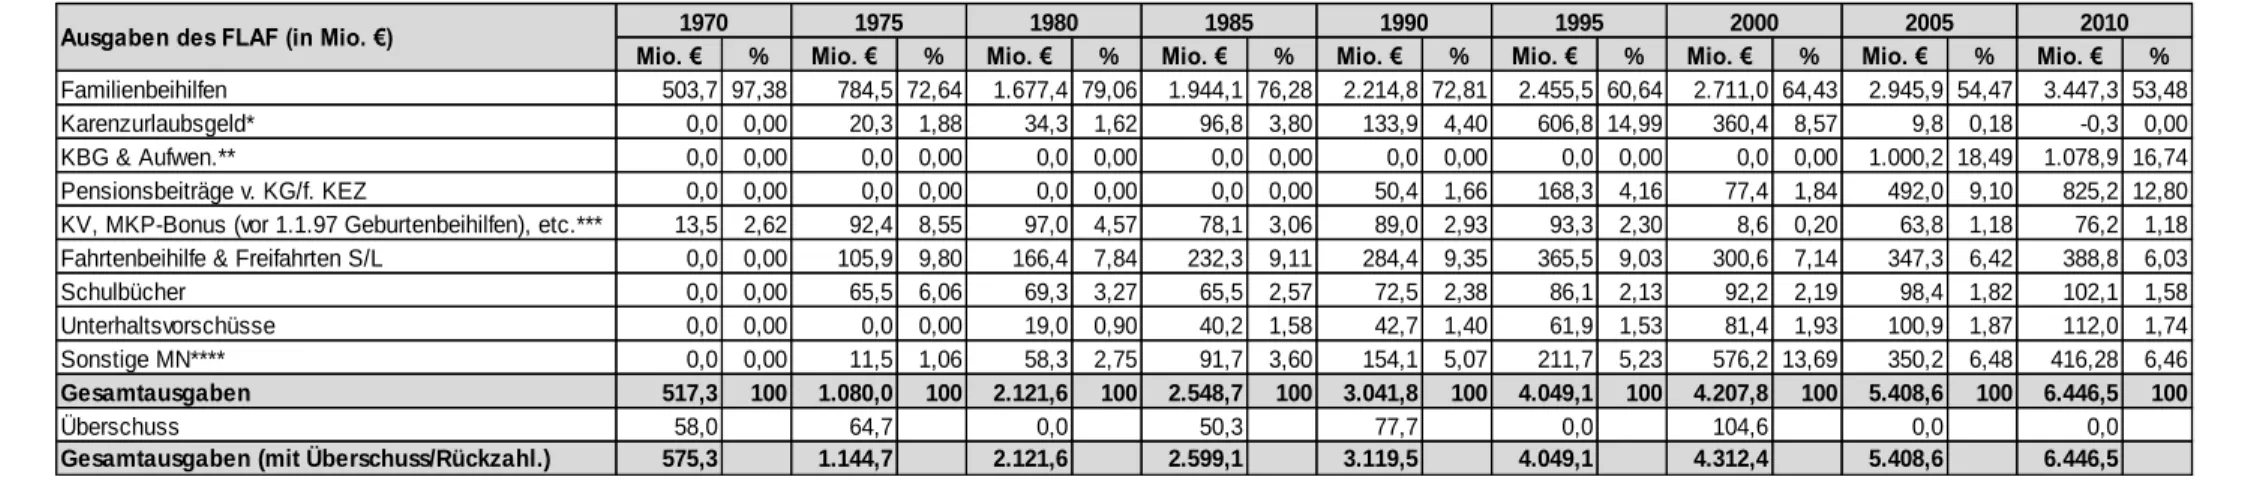 Tab. 3: Ausgaben des FLAF in Mio. €, nominell (1970-2010)